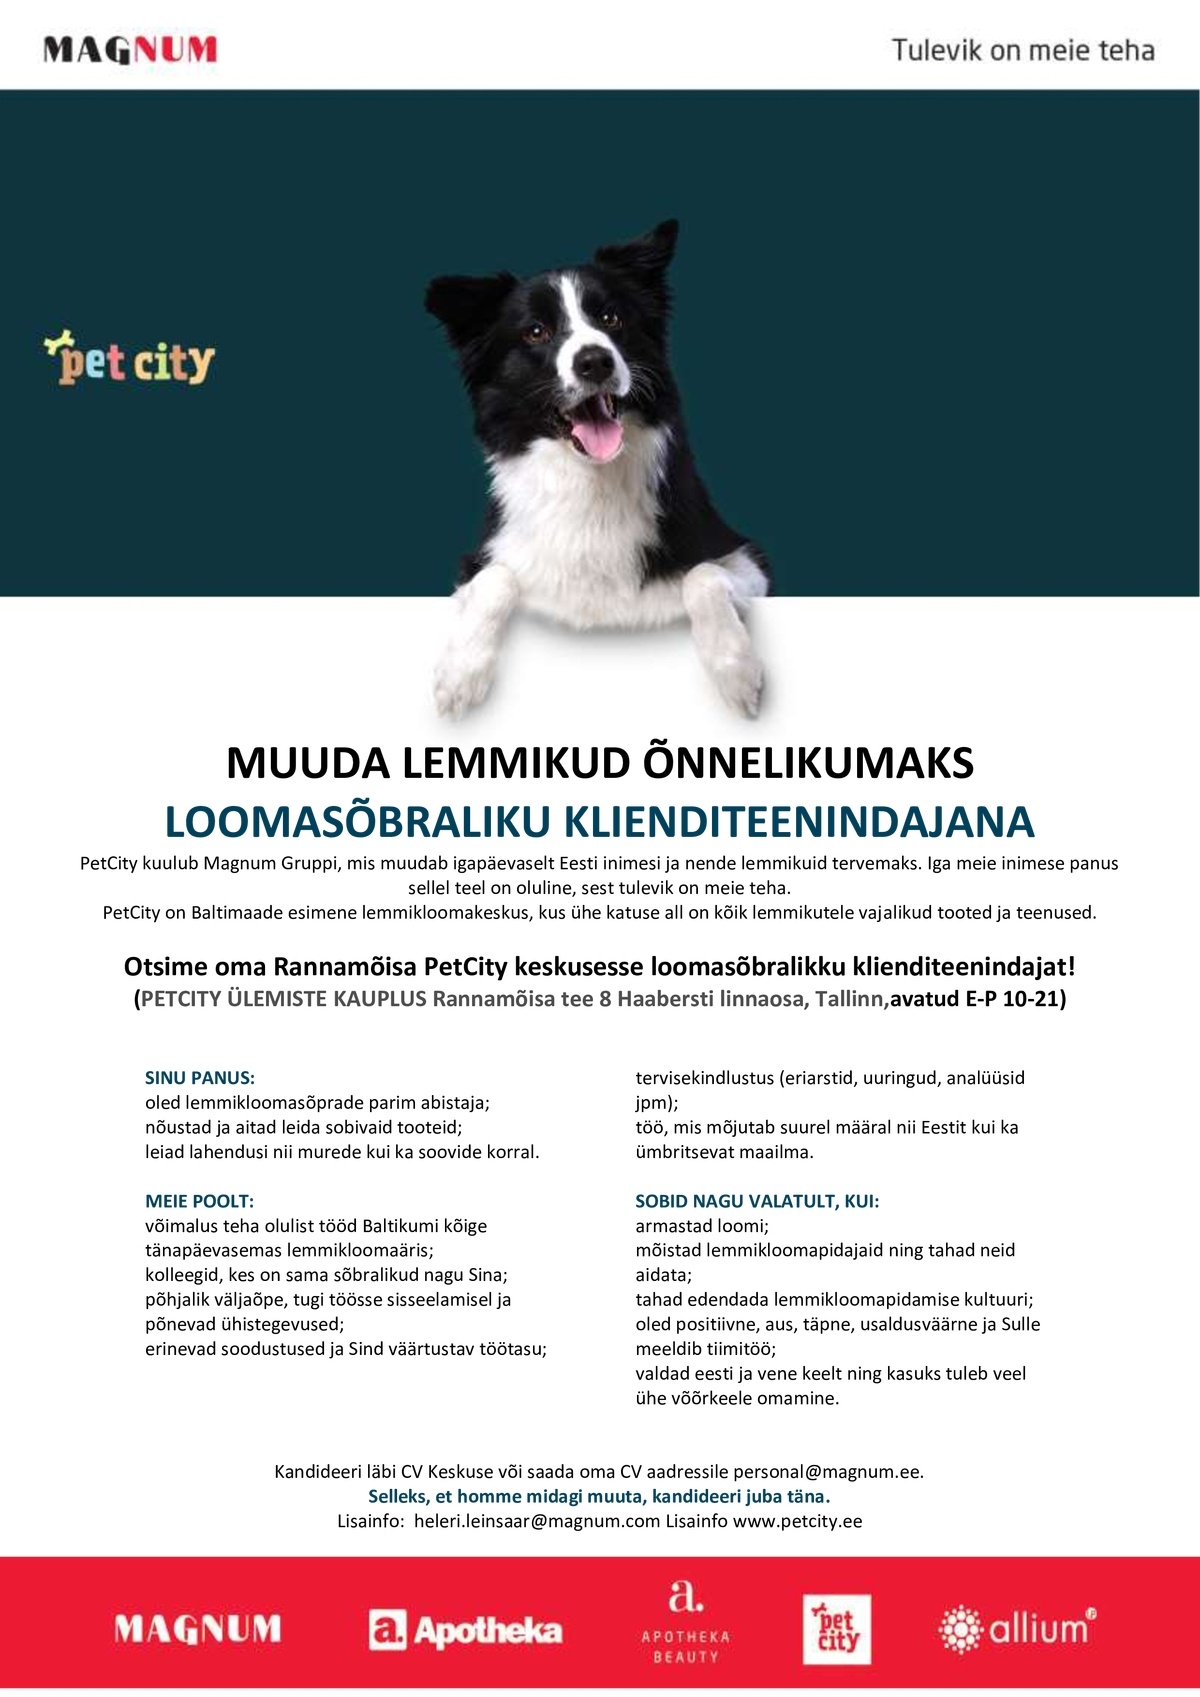 PET CITY OÜ Klienditeenindaja Rannamõisa PetCitysse